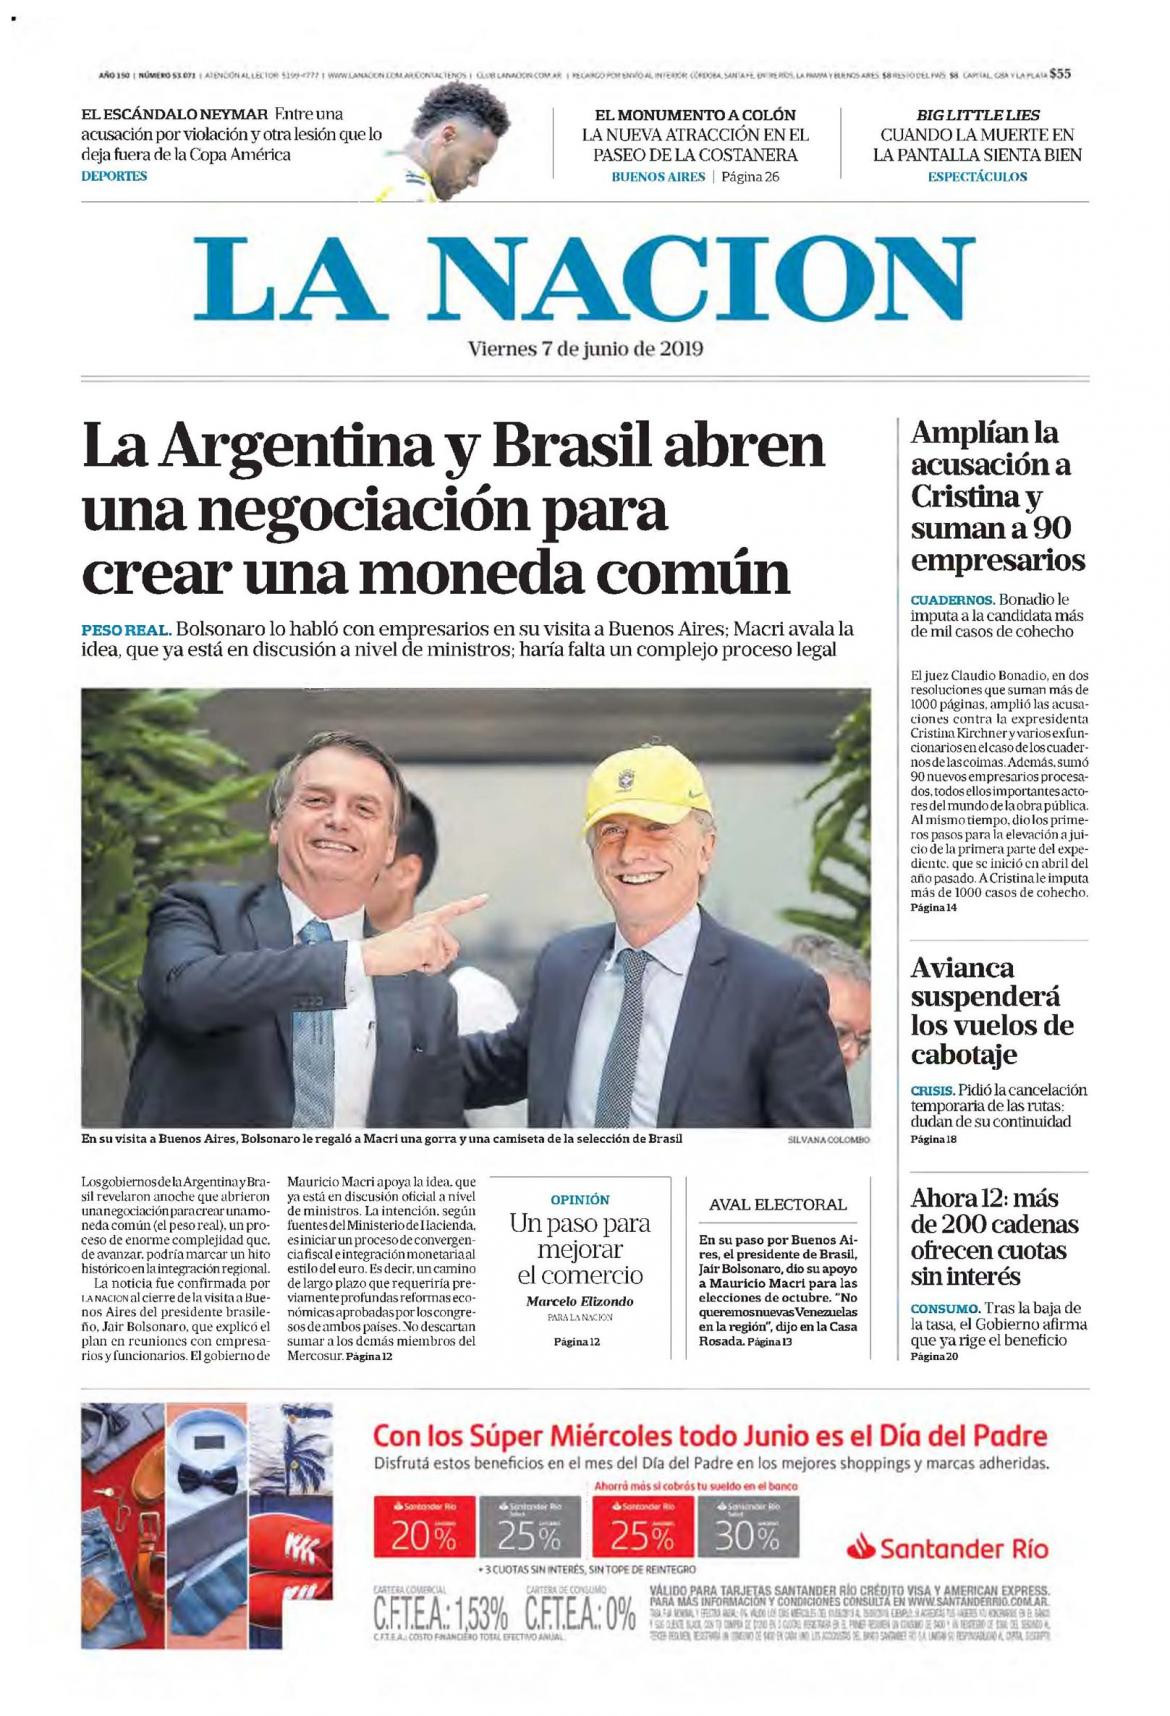 Tapas de diarios - La Nación viernes 07-06-19